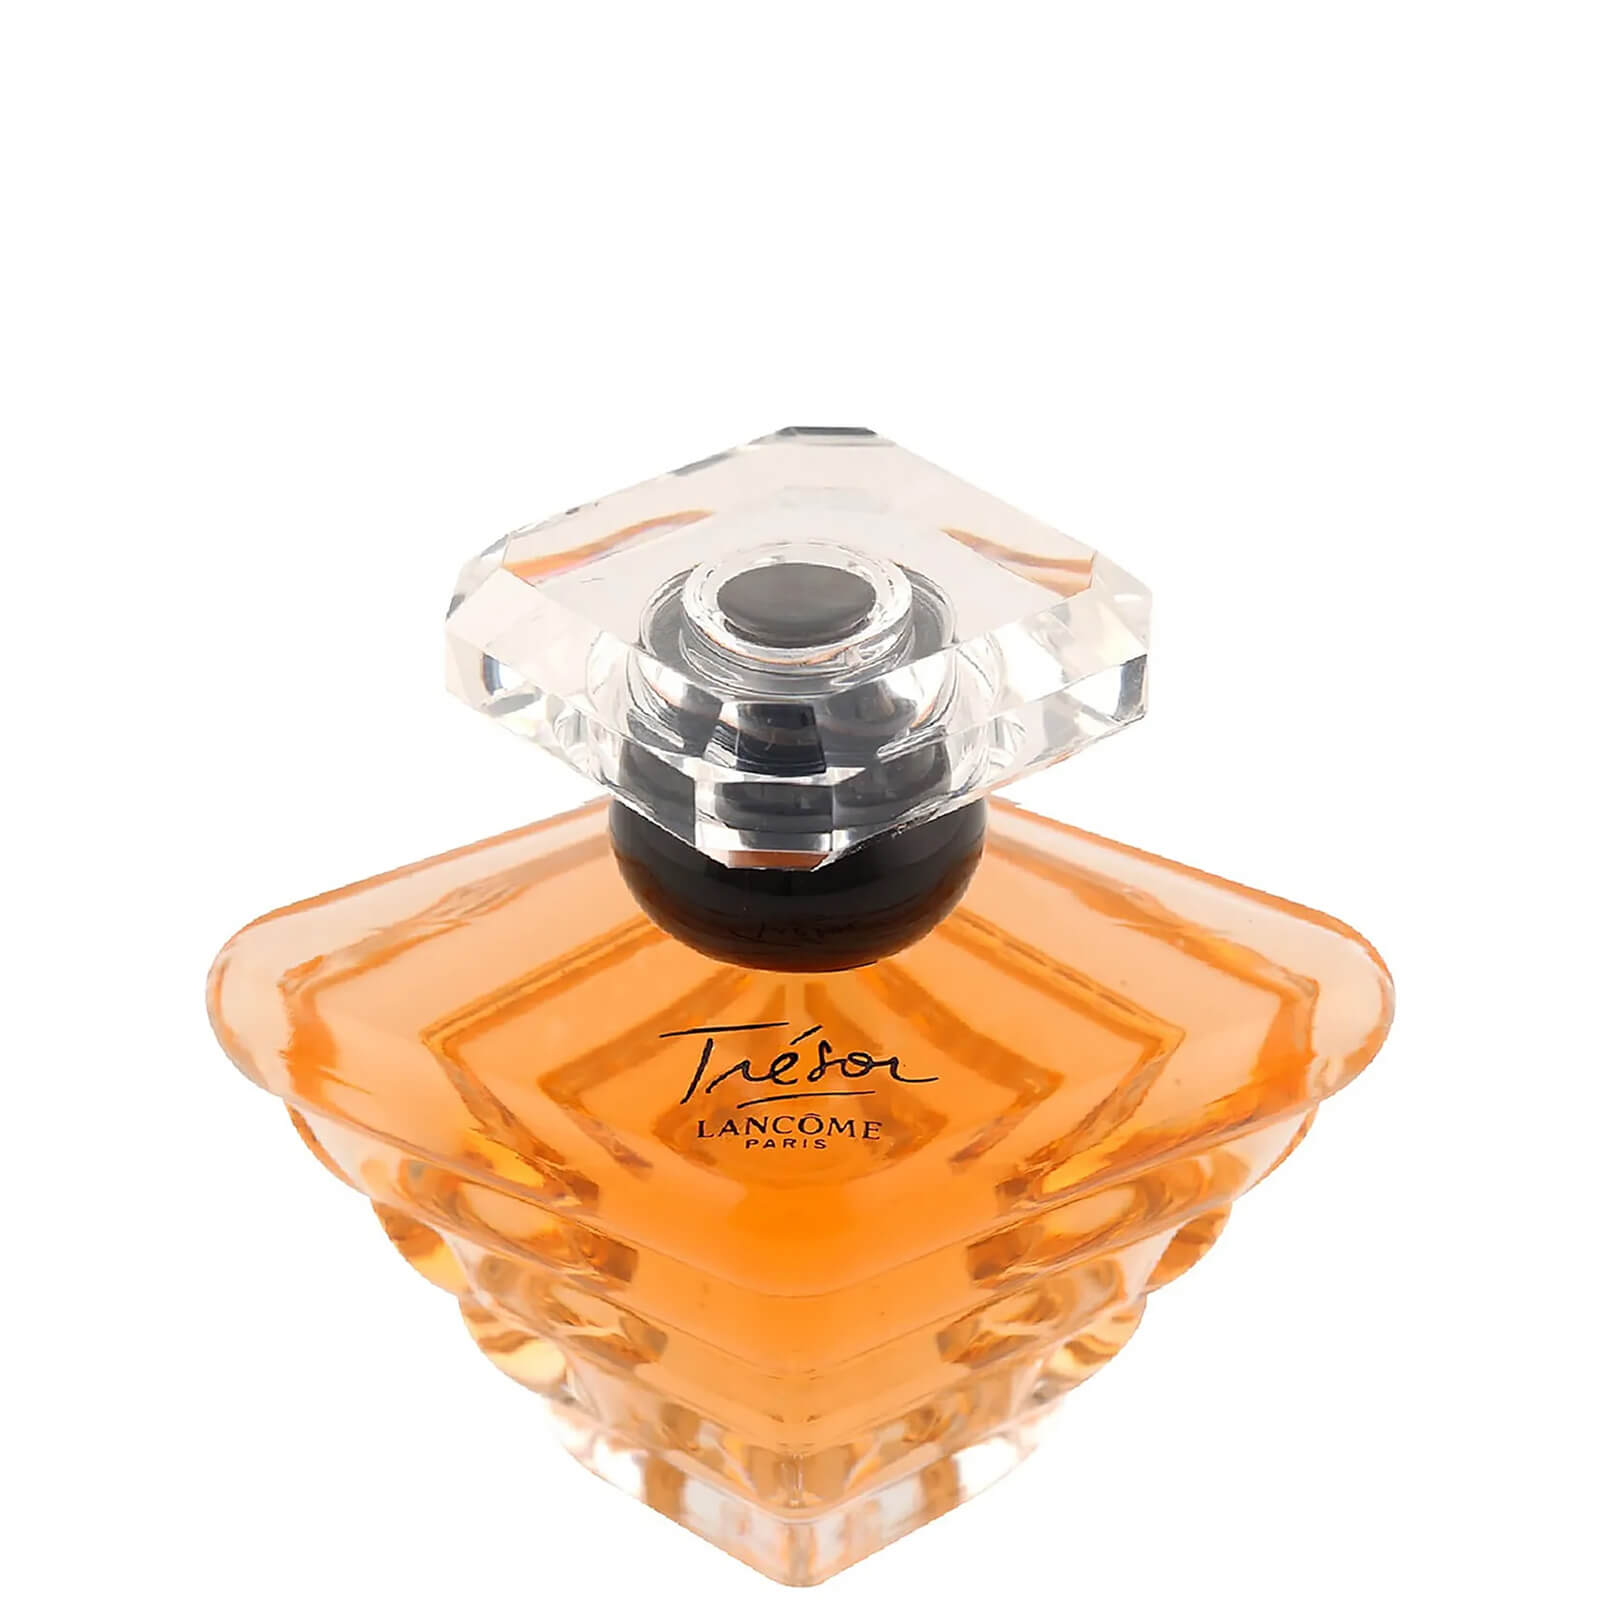 Lancôme Trésor eau de parfum - 30 ml